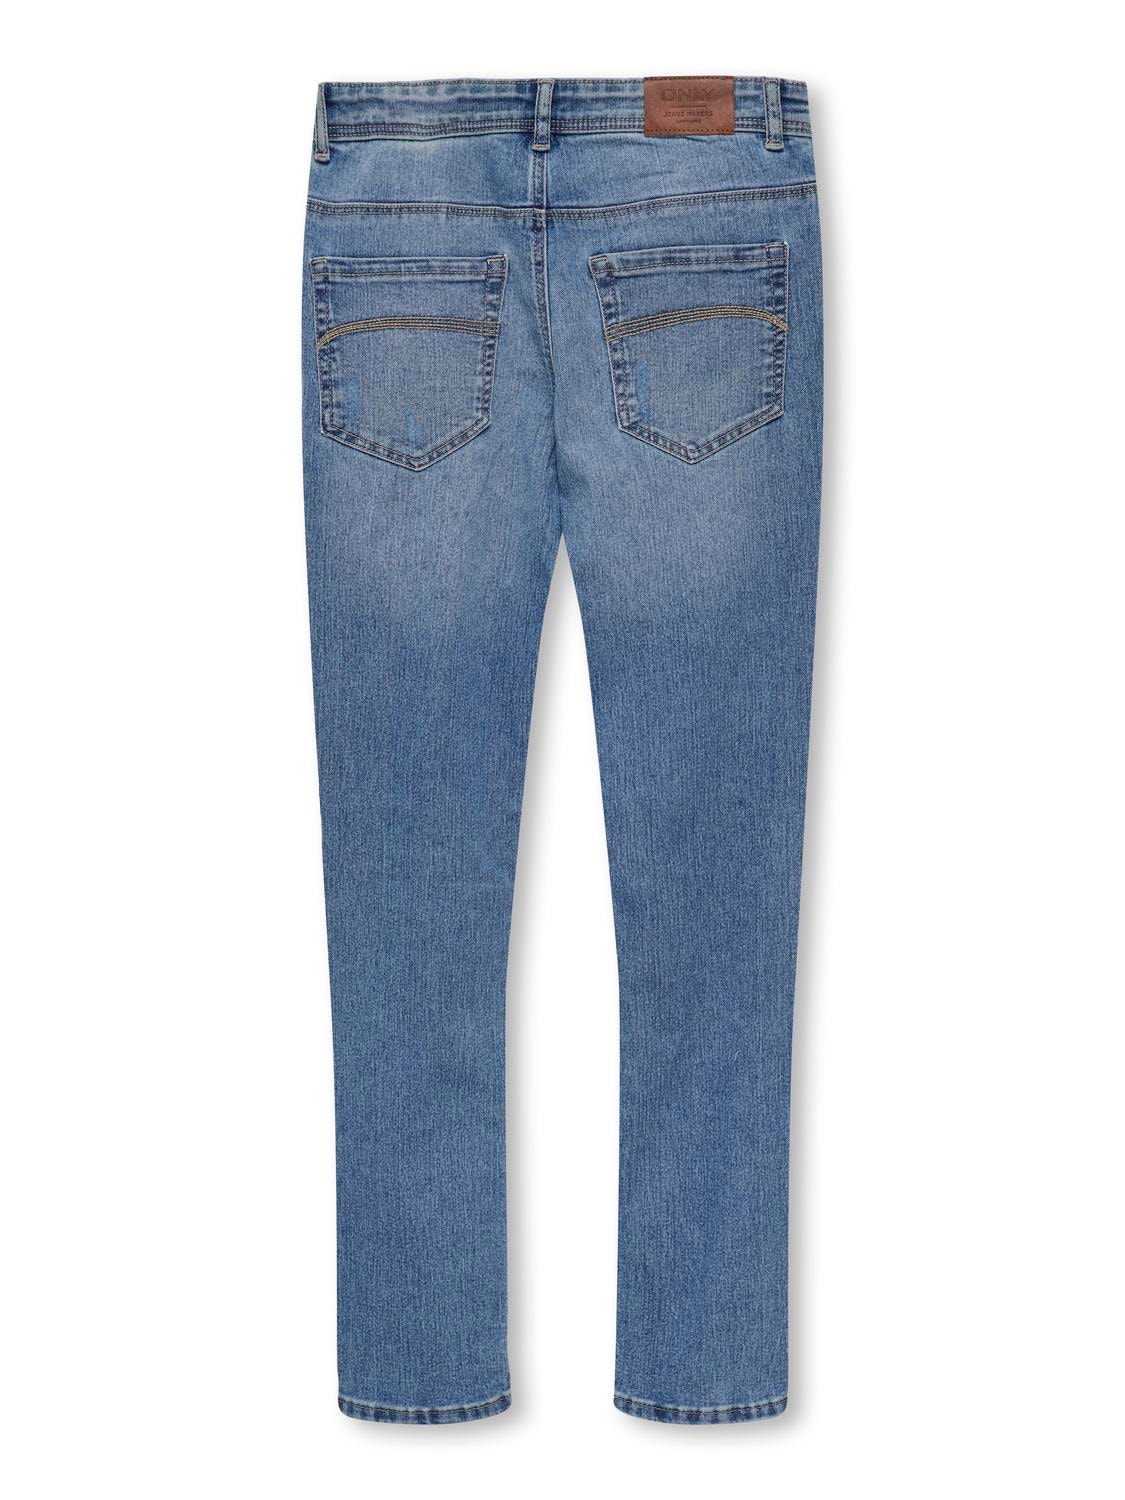 ONLY Jeans Skinny Fit -Light Blue Denim - 15280012